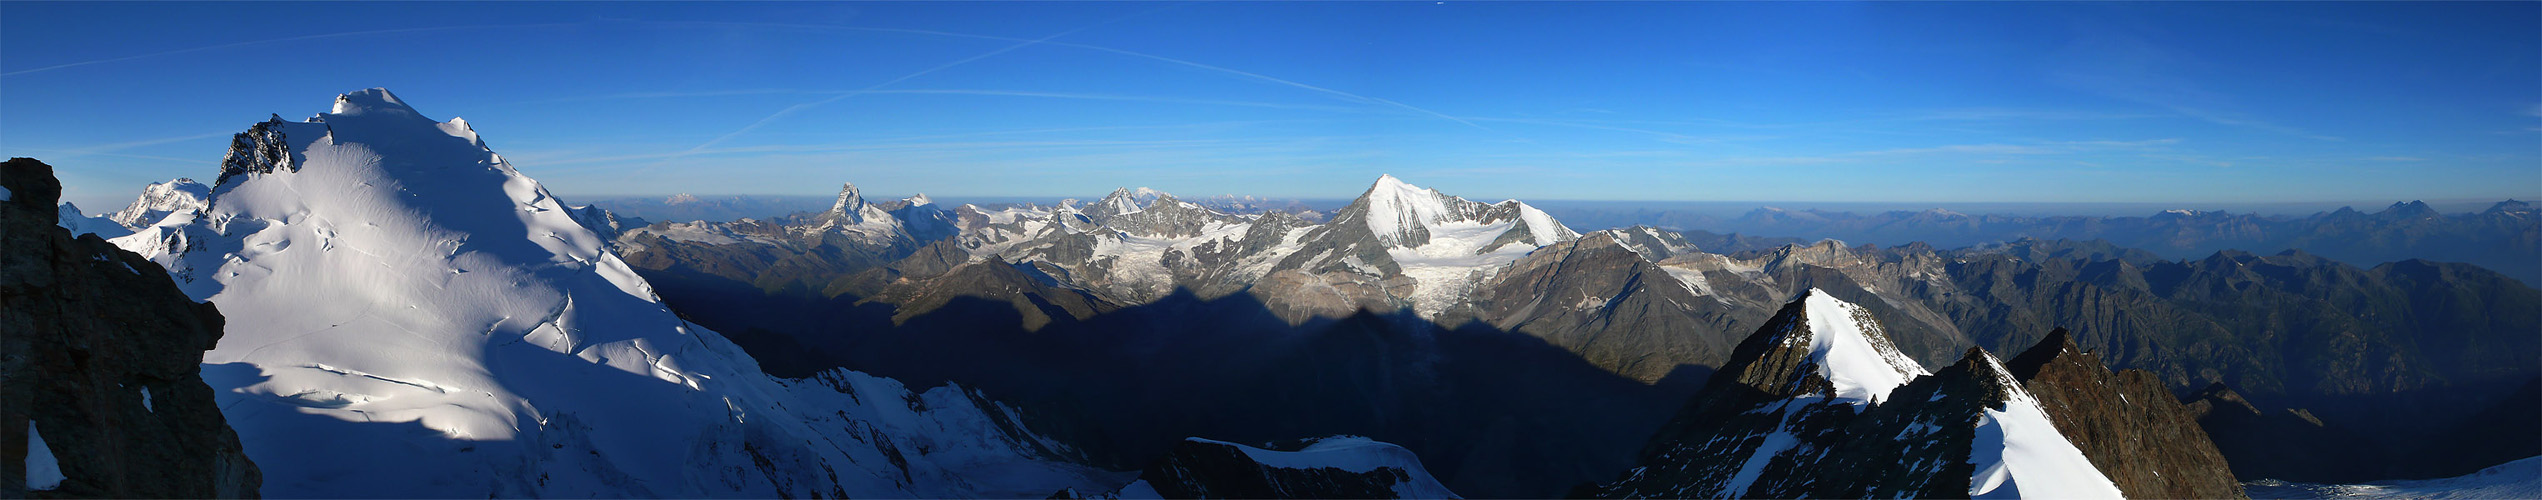 Dom - Matterhorn - Weishorn